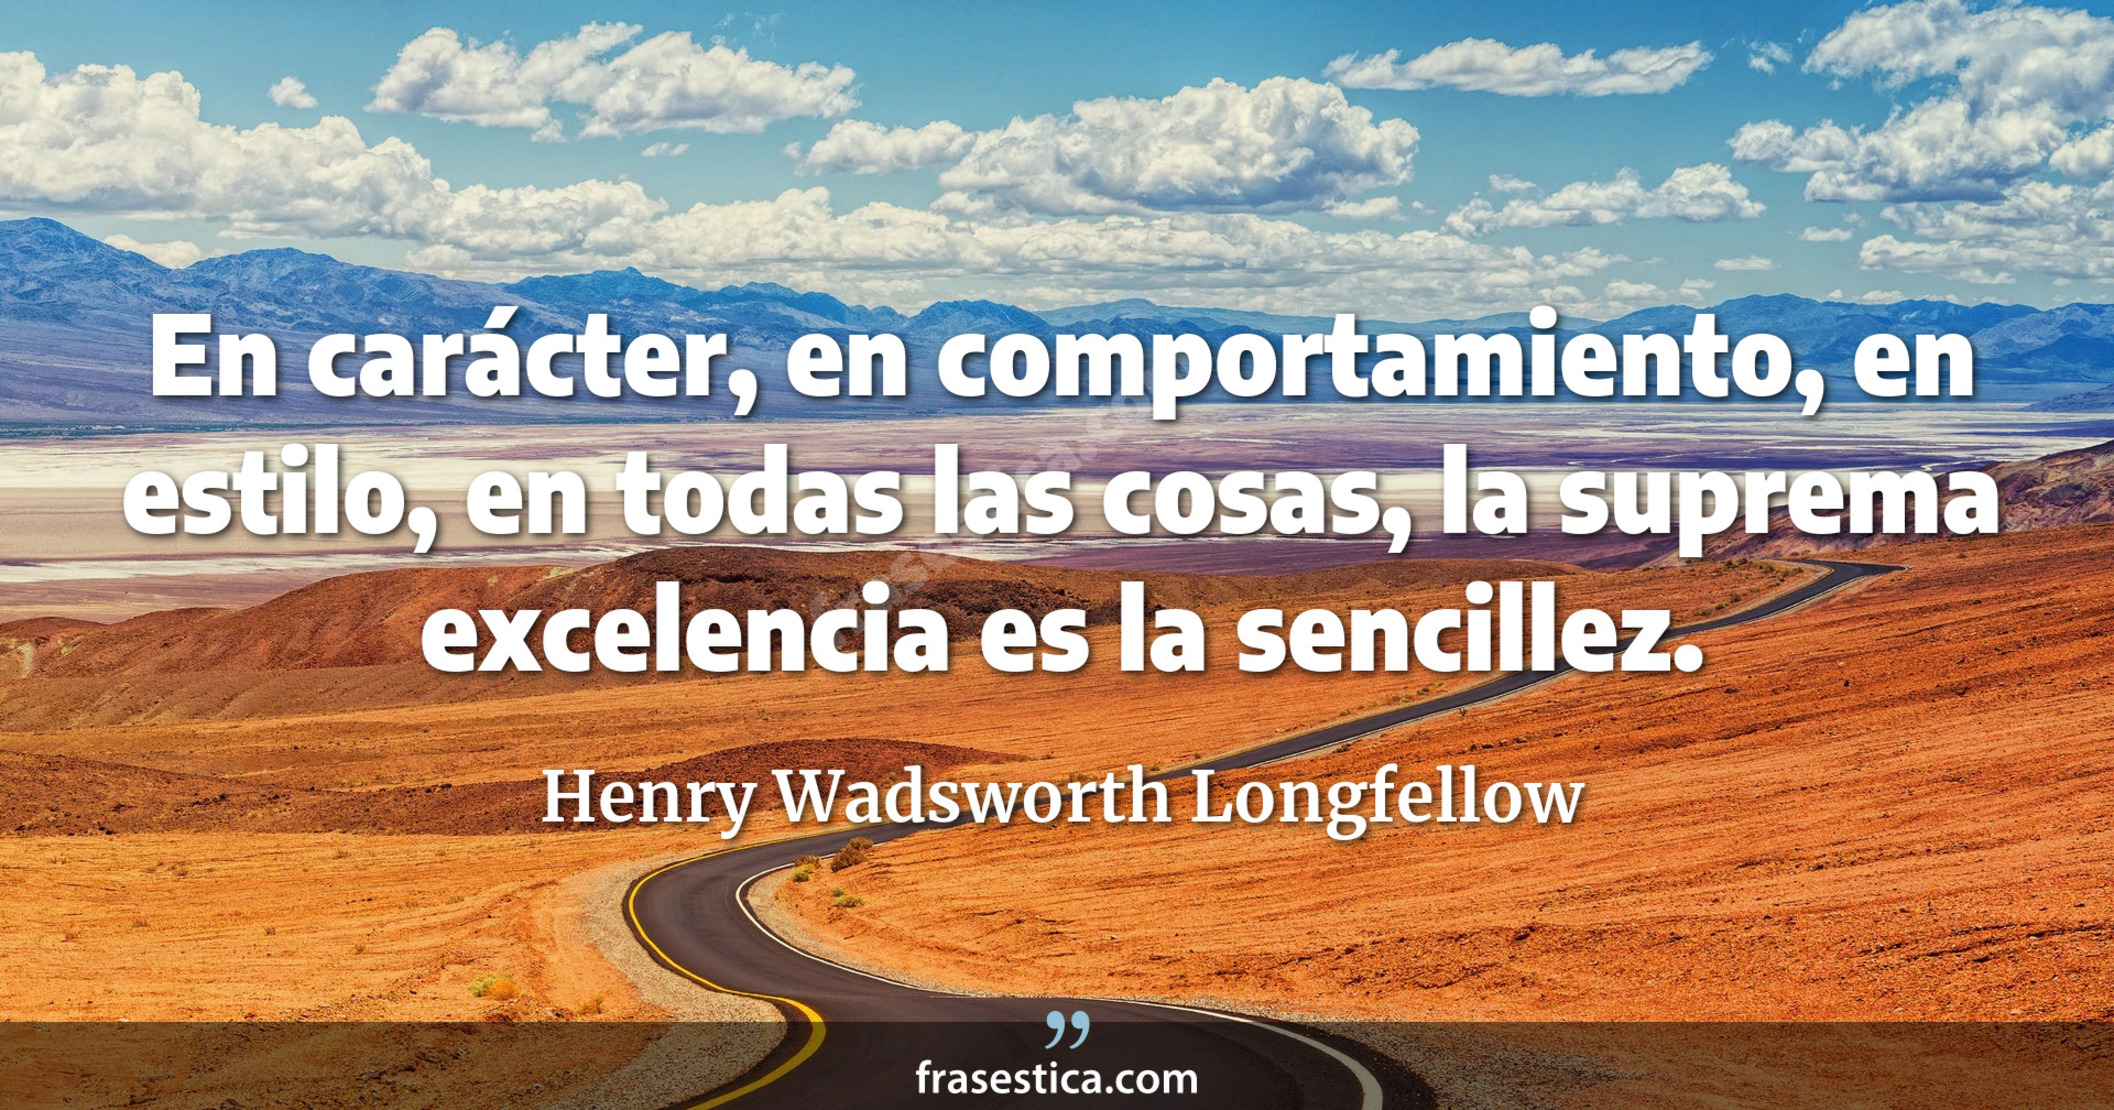 En carácter, en comportamiento, en estilo, en todas las cosas, la suprema excelencia es la sencillez. - Henry Wadsworth Longfellow